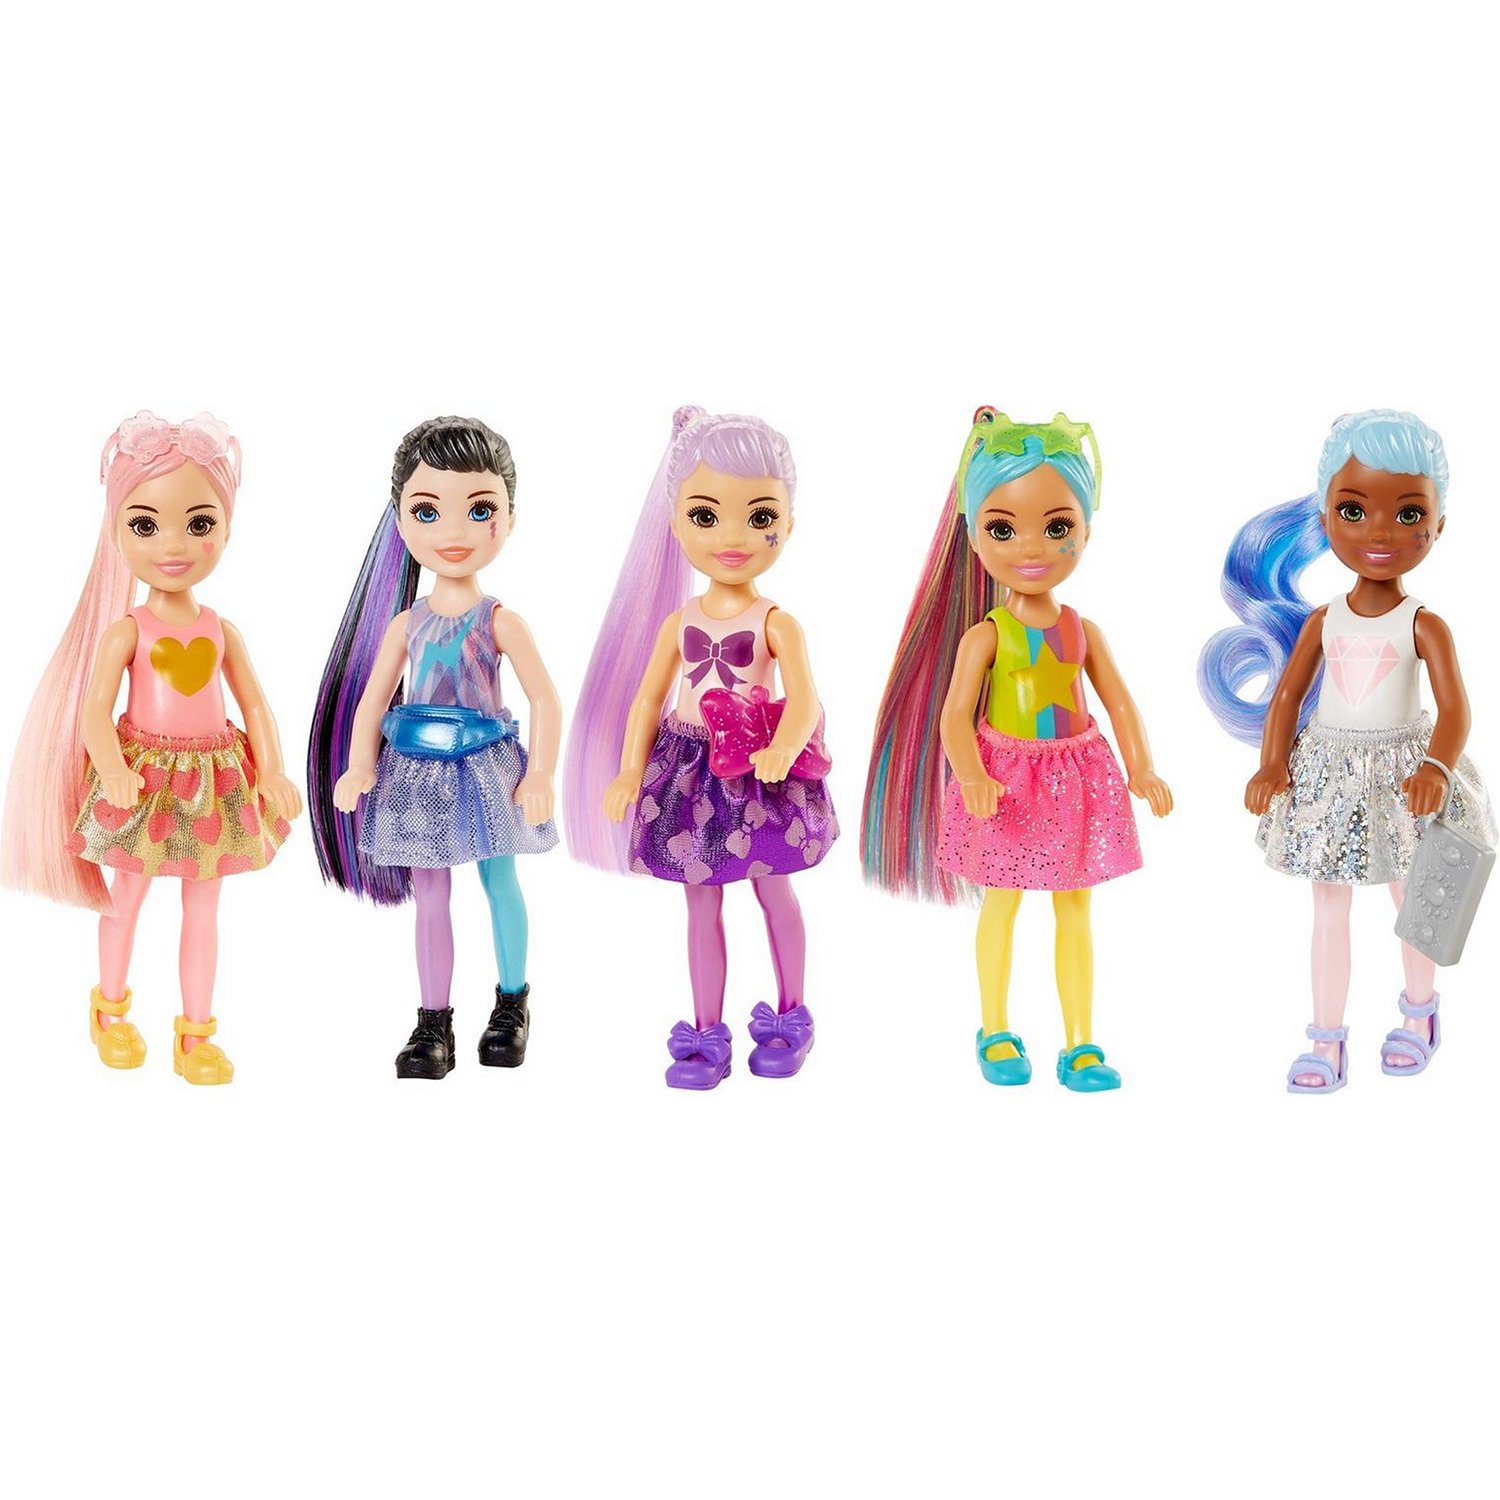 Кукла-сюрприз Barbie Челси Волна 1 с блестящими куклами сюрпризами внутри